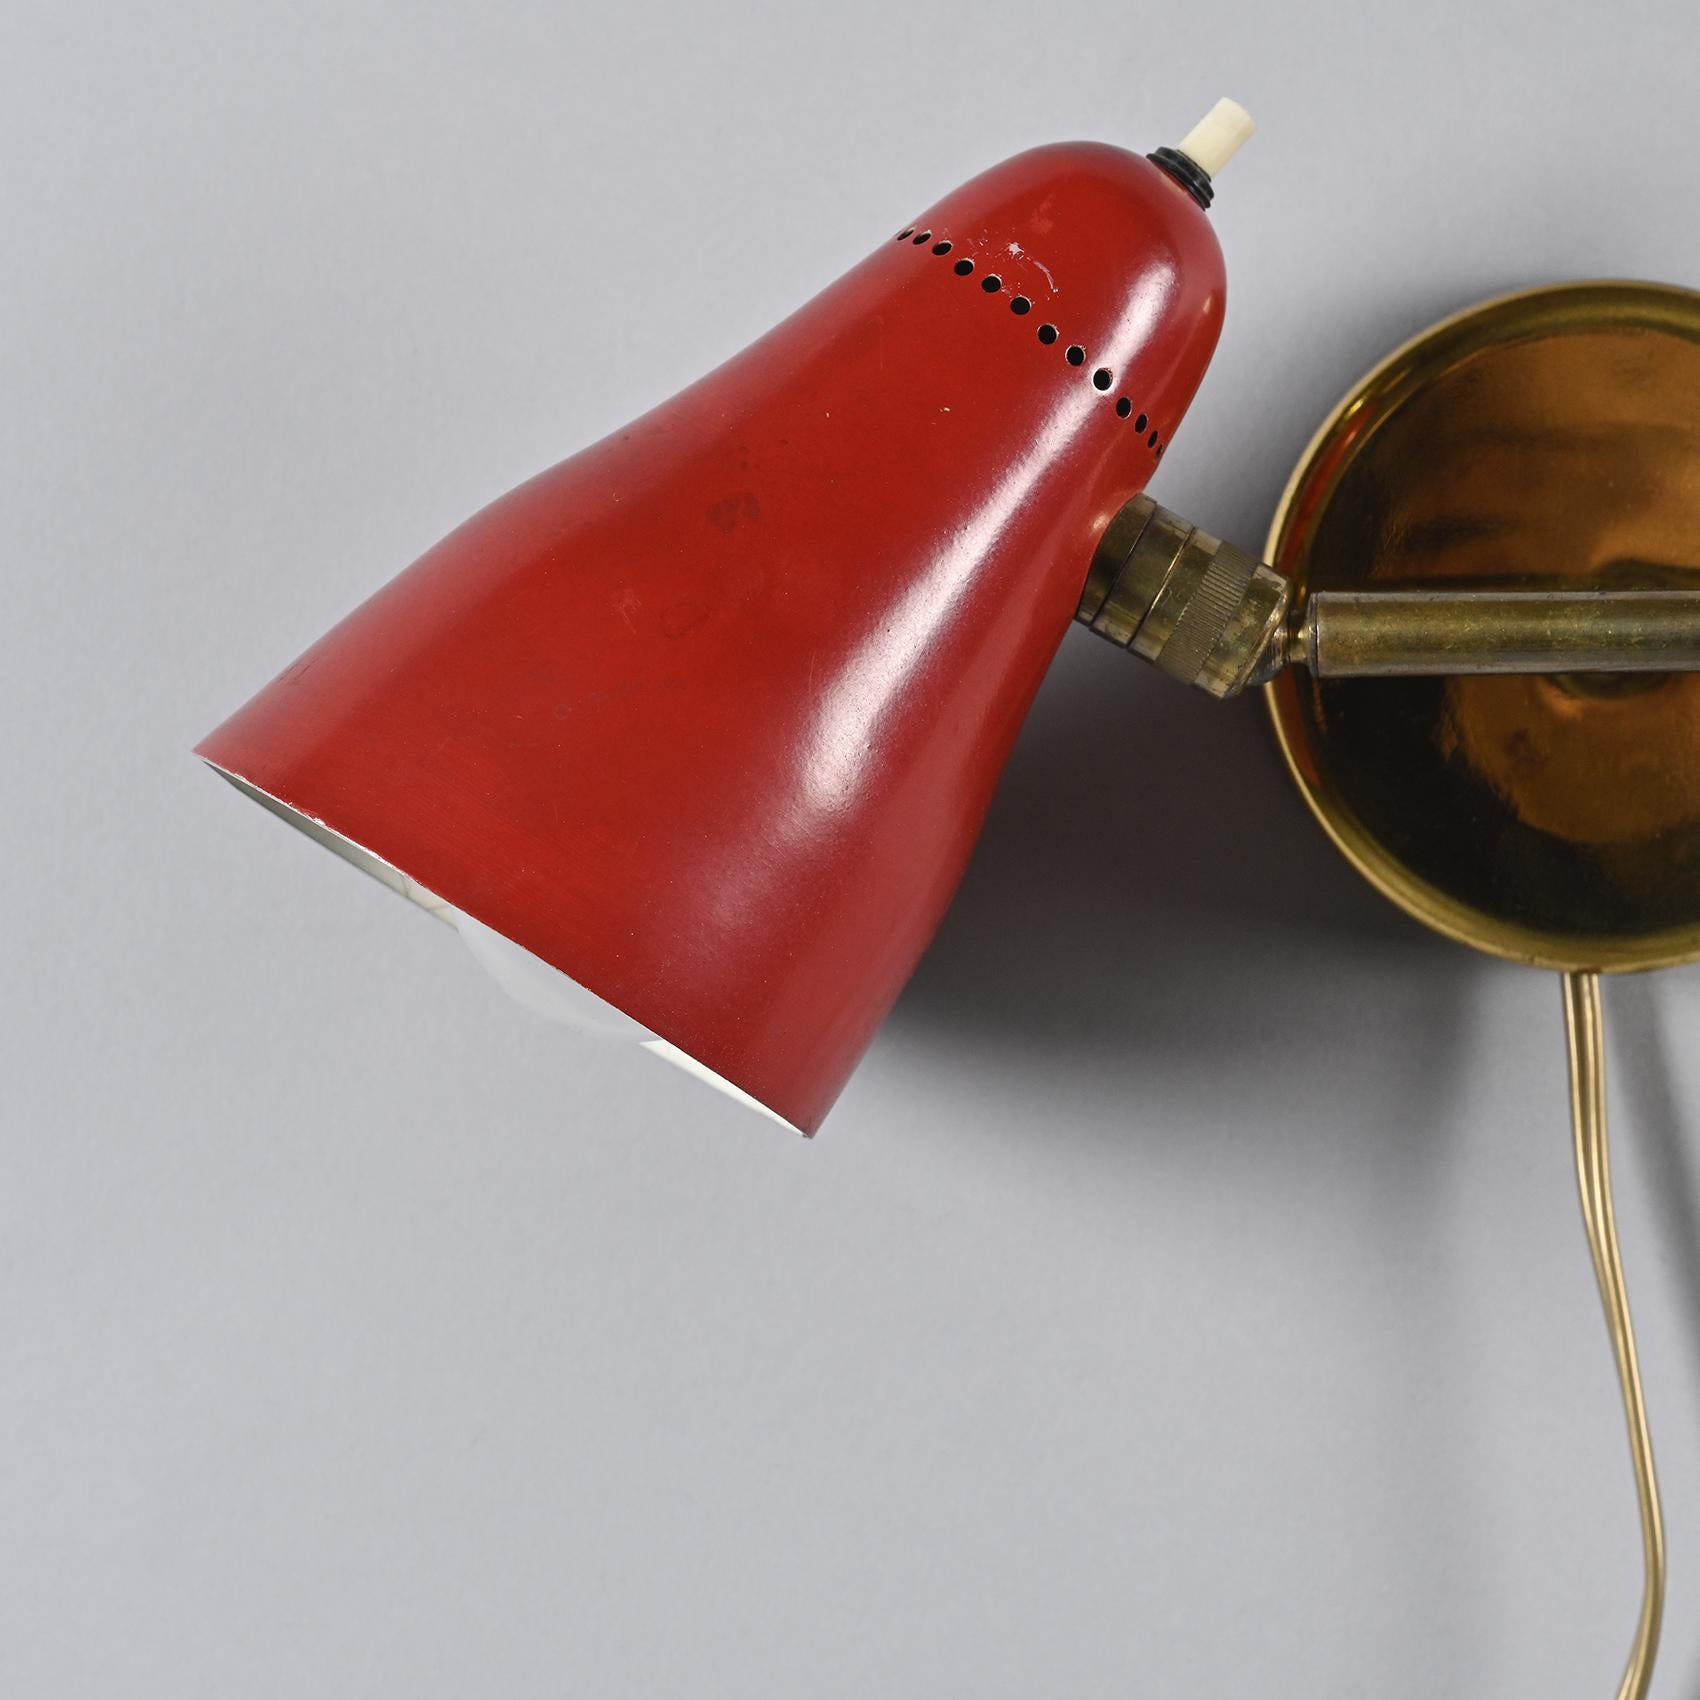 Applique à base circulaire en laiton doré, conçue par Giuseppe Ostuni dans les années 1950 pour O'Luce.

La base présente une tige conique terminée par deux articulations qui accueillent deux réflecteurs coniques en métal laqué crème. Le détail en